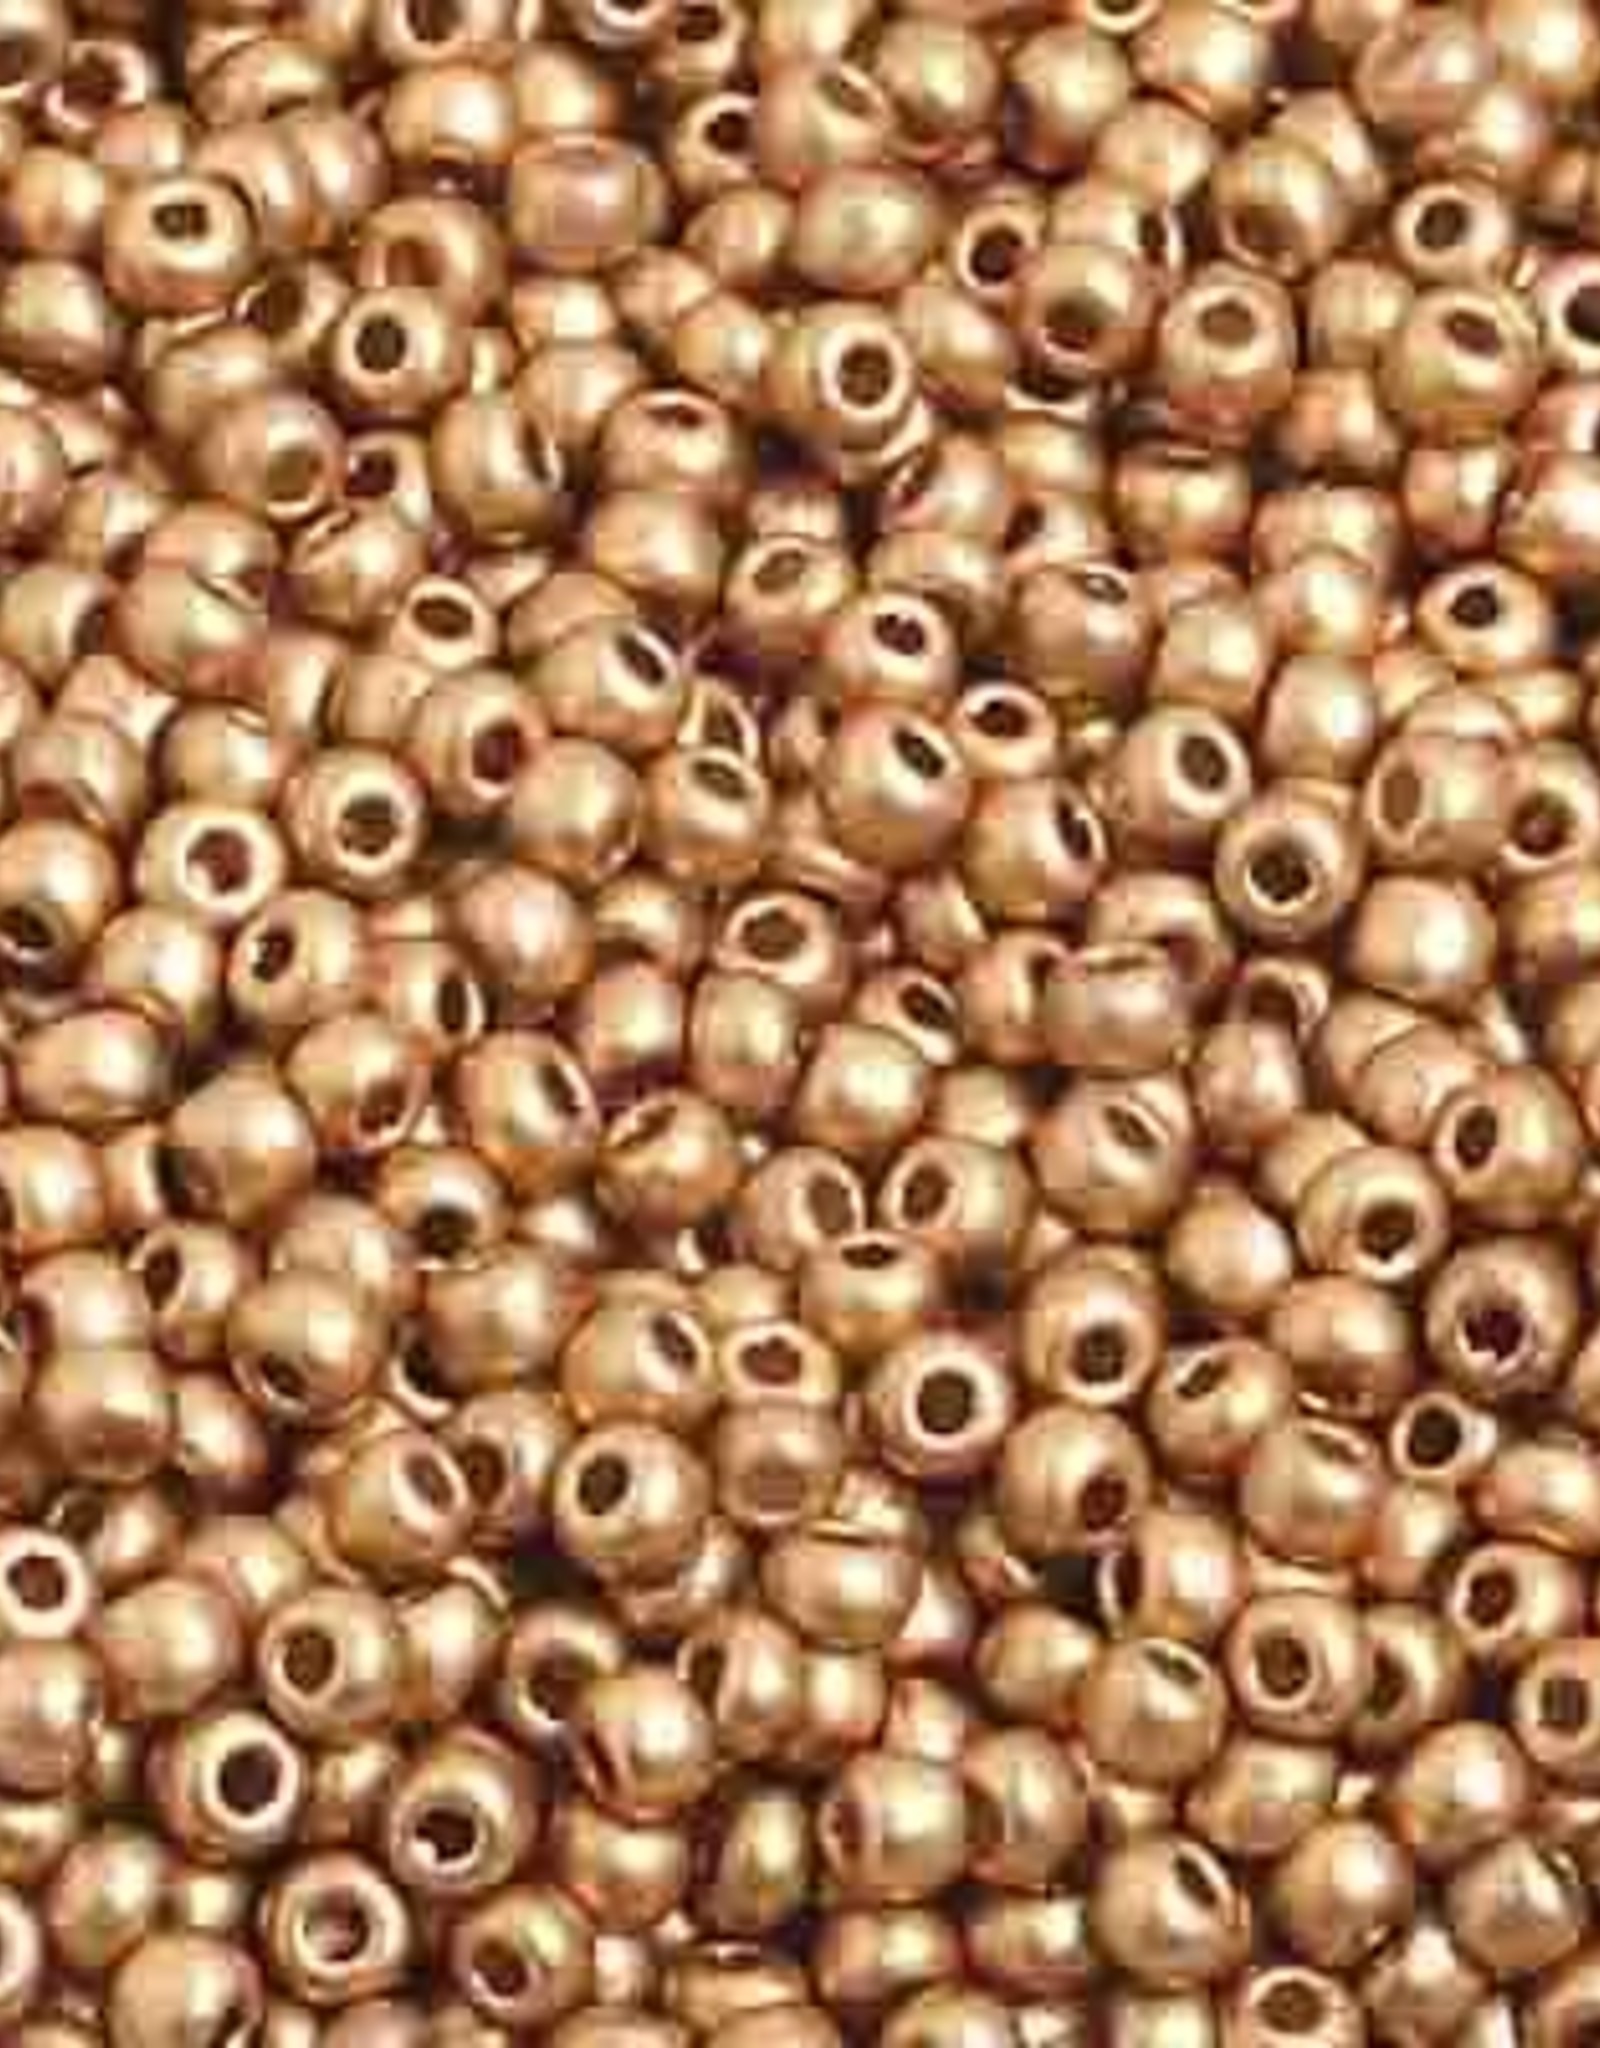 Preciosa Czech Seed Bead Seed beads 10/0 Gold